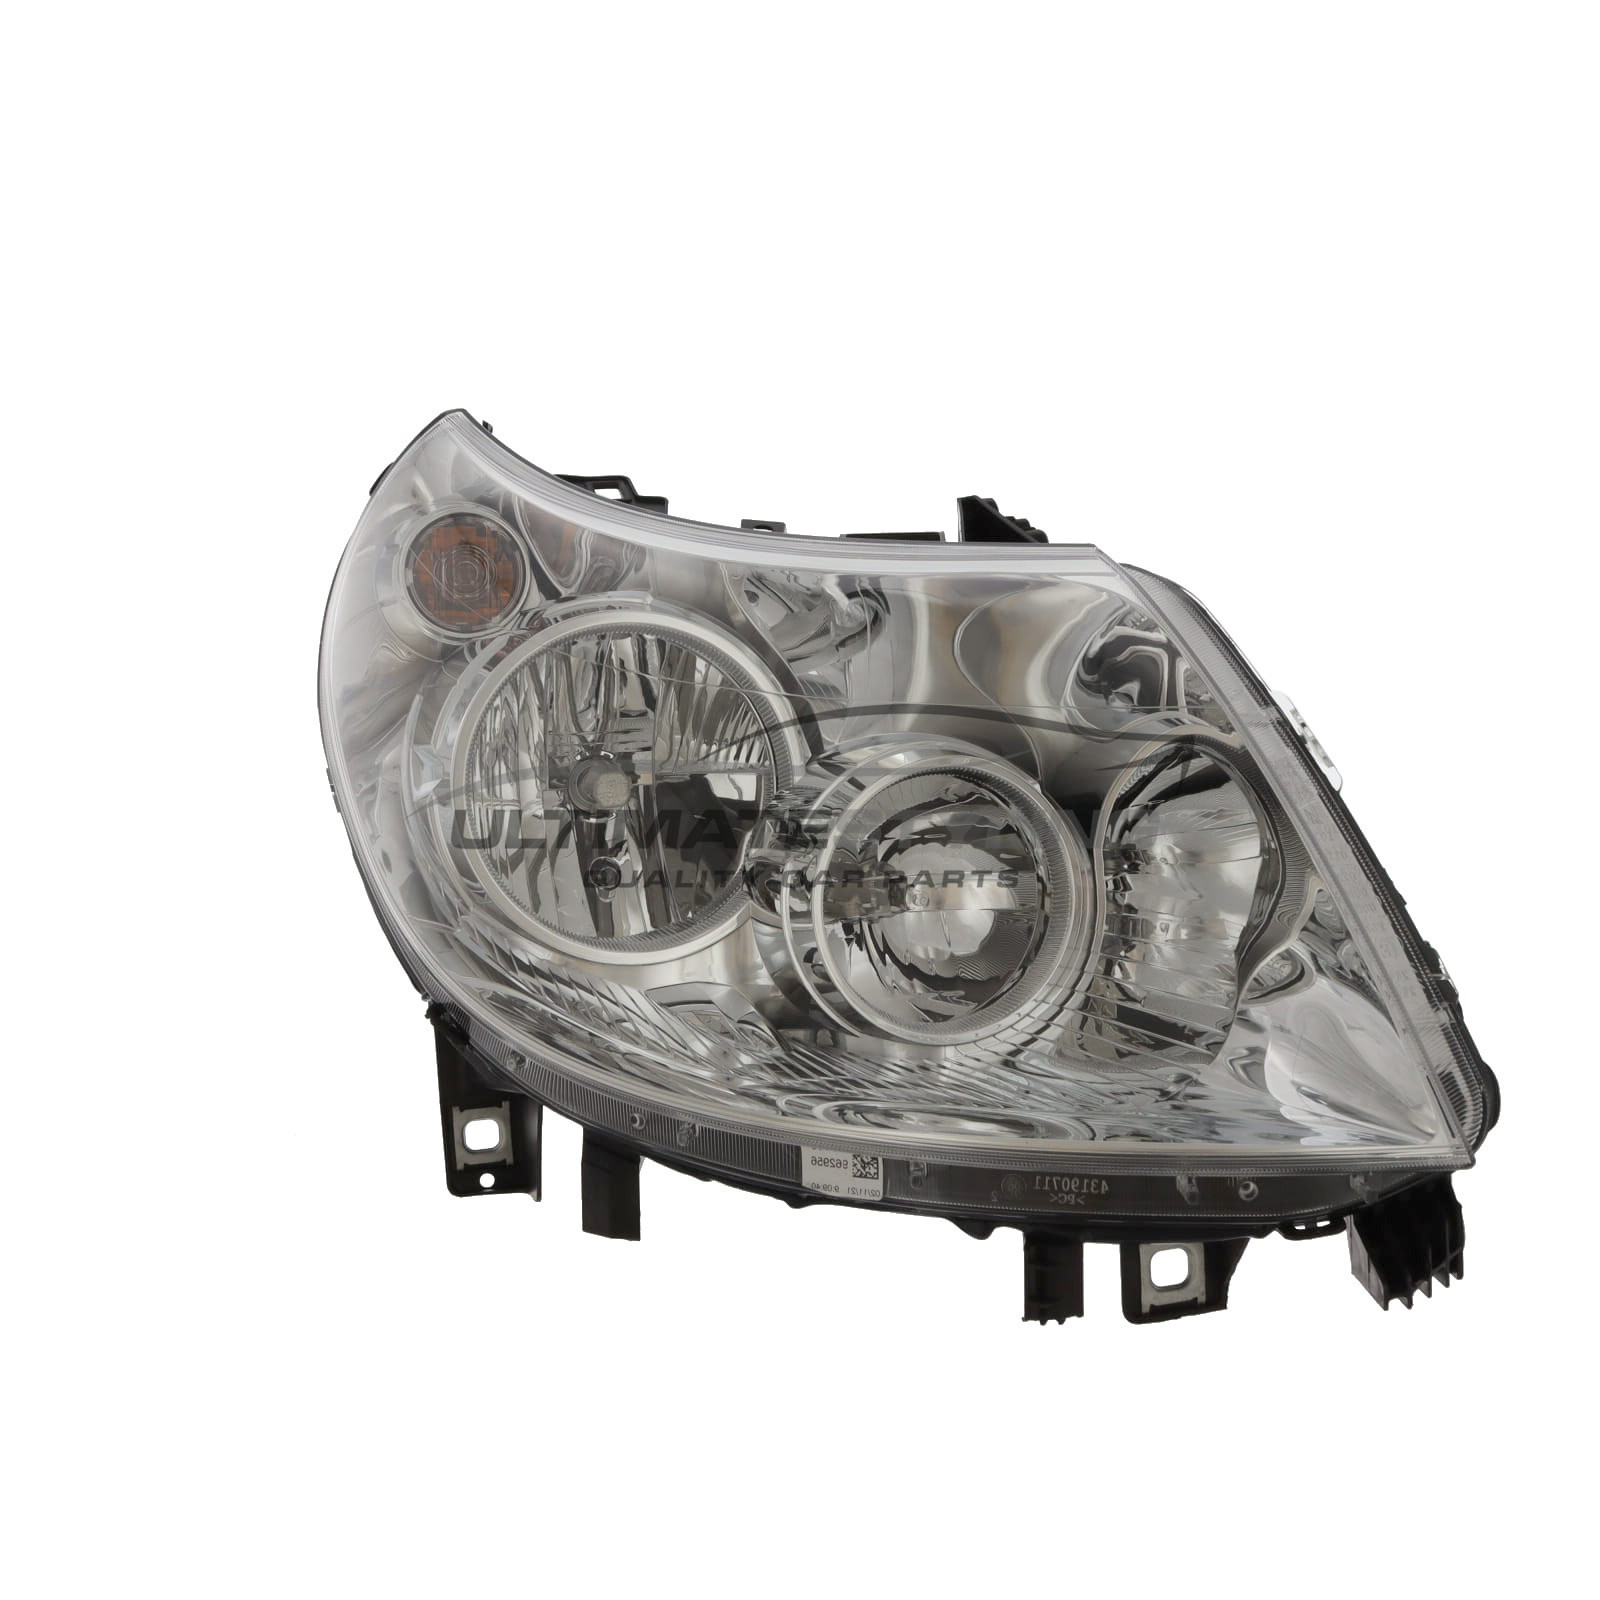 Headlight / Headlamp for Peugeot Boxer